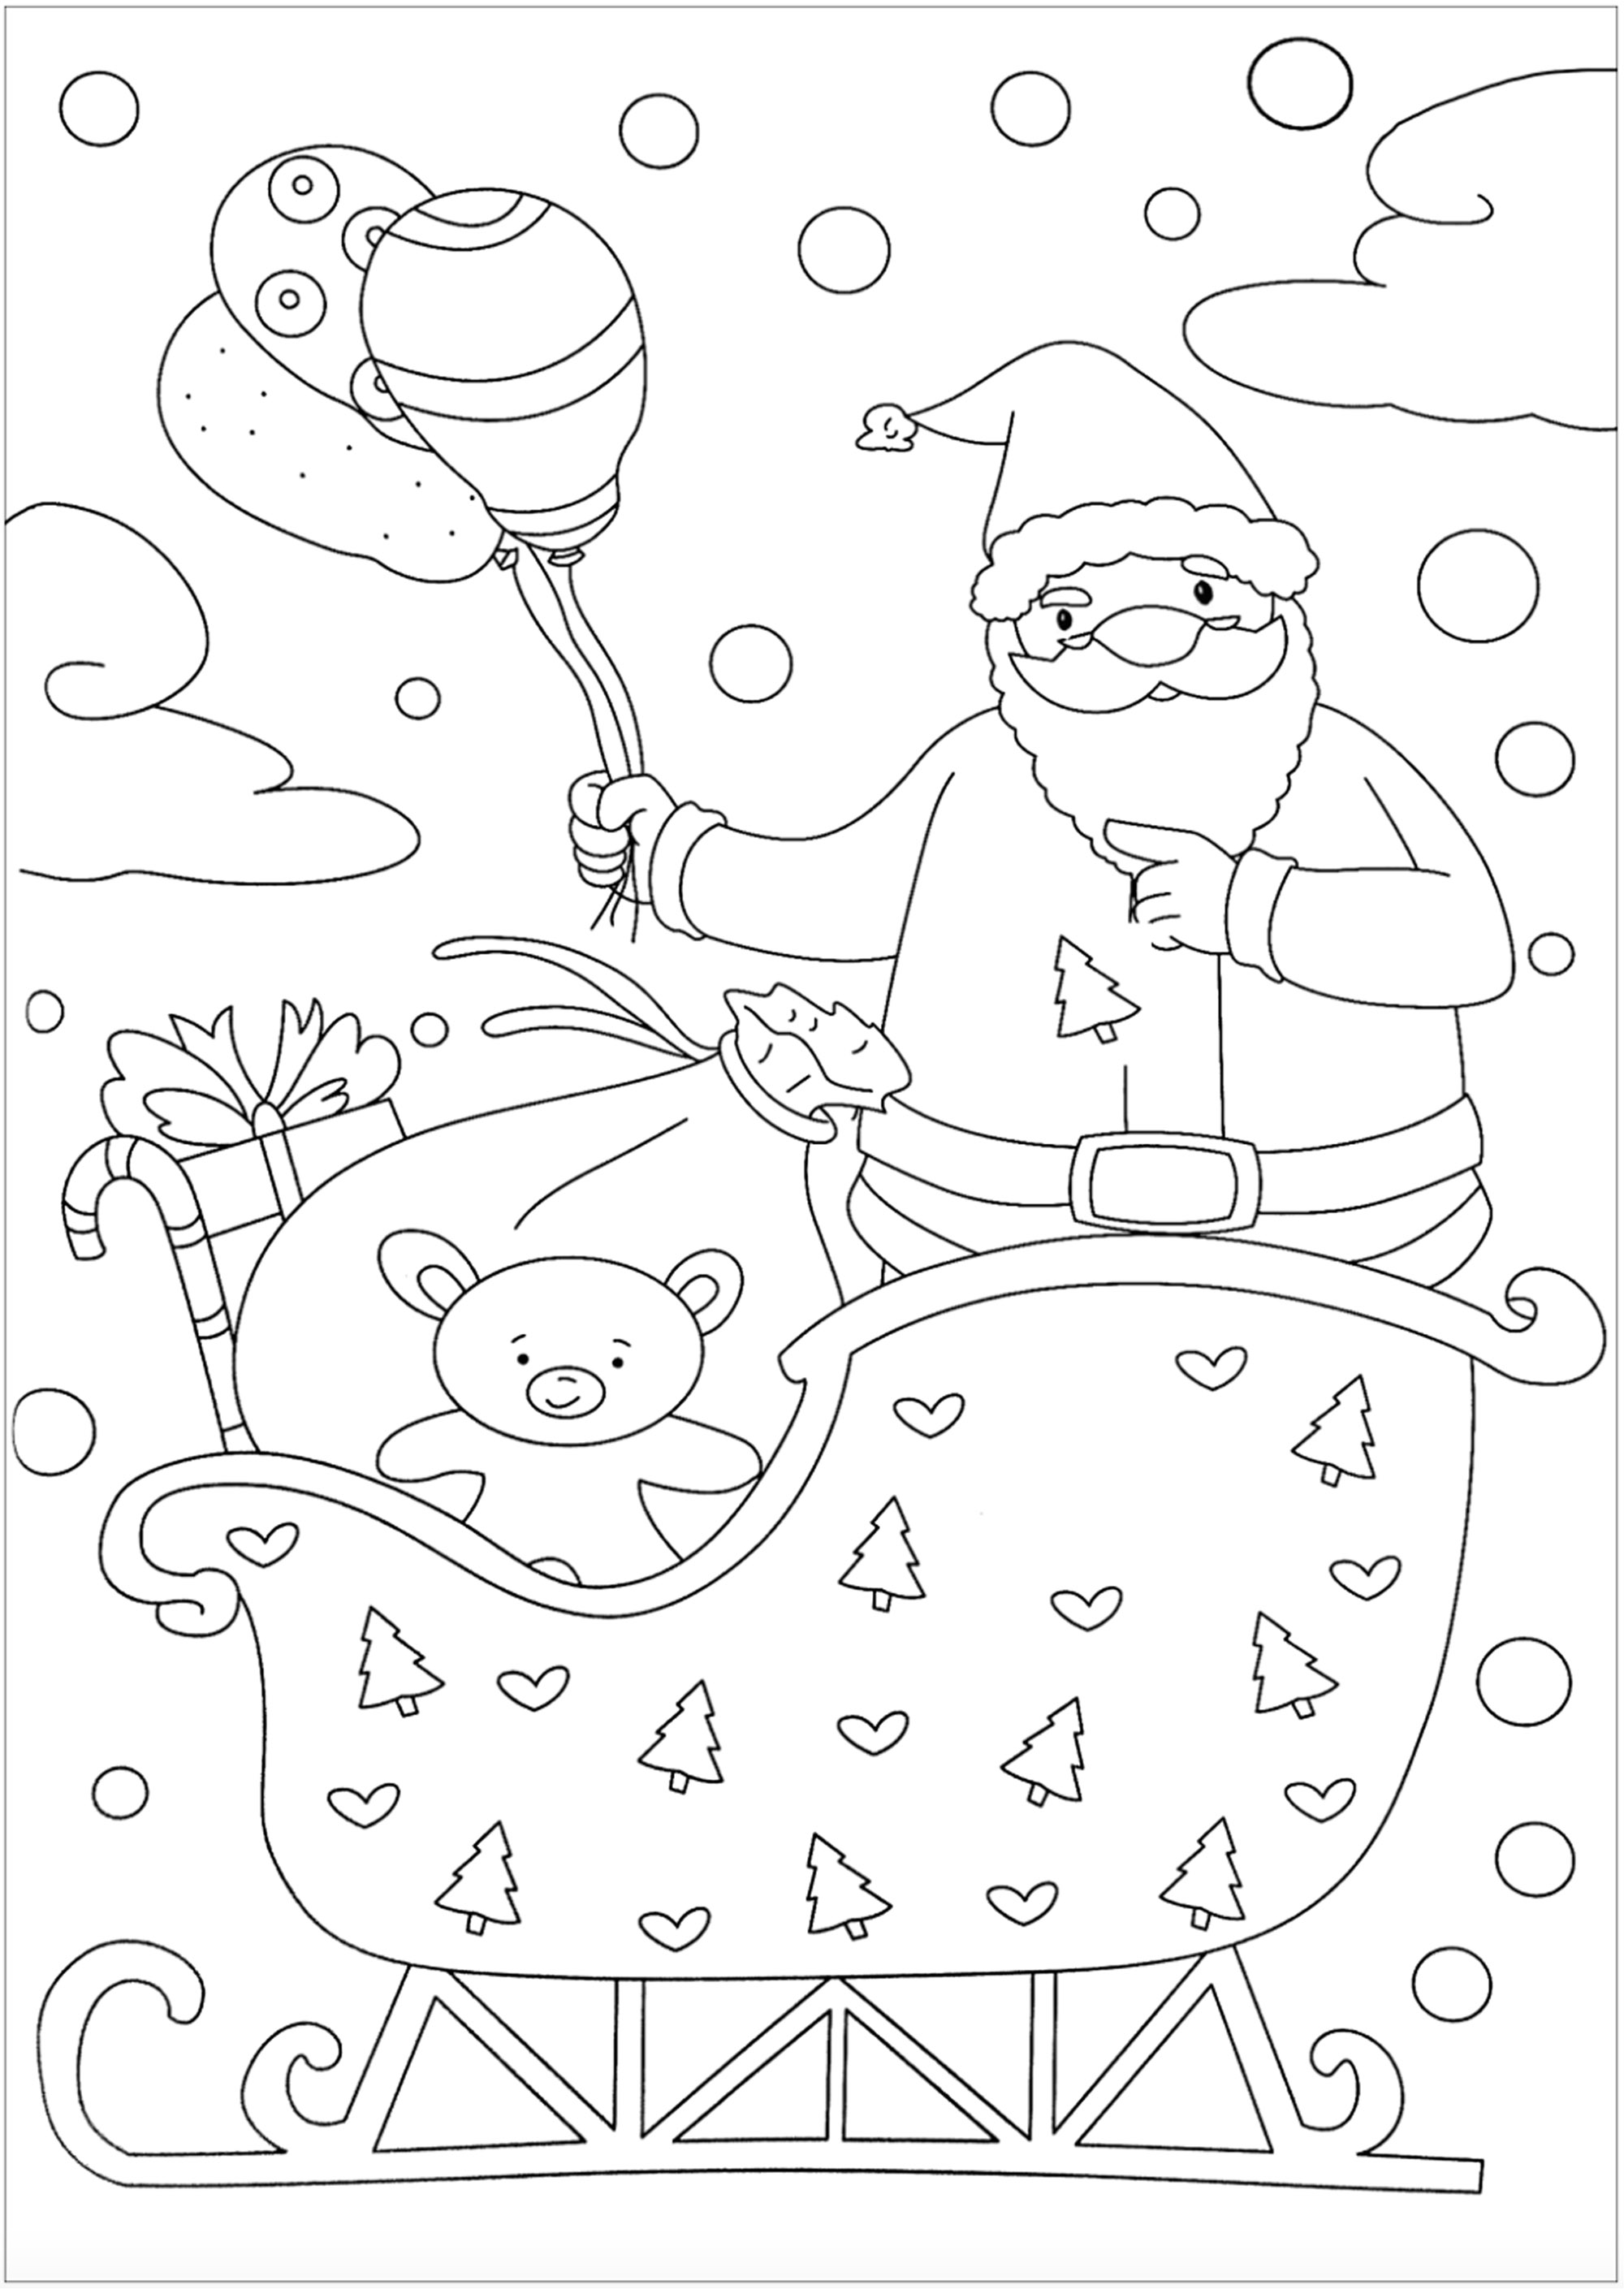 Un beau Père Noël à colorier, avec des jolis ballons. Il est dans son traineau avec de cadeaux et un doudou